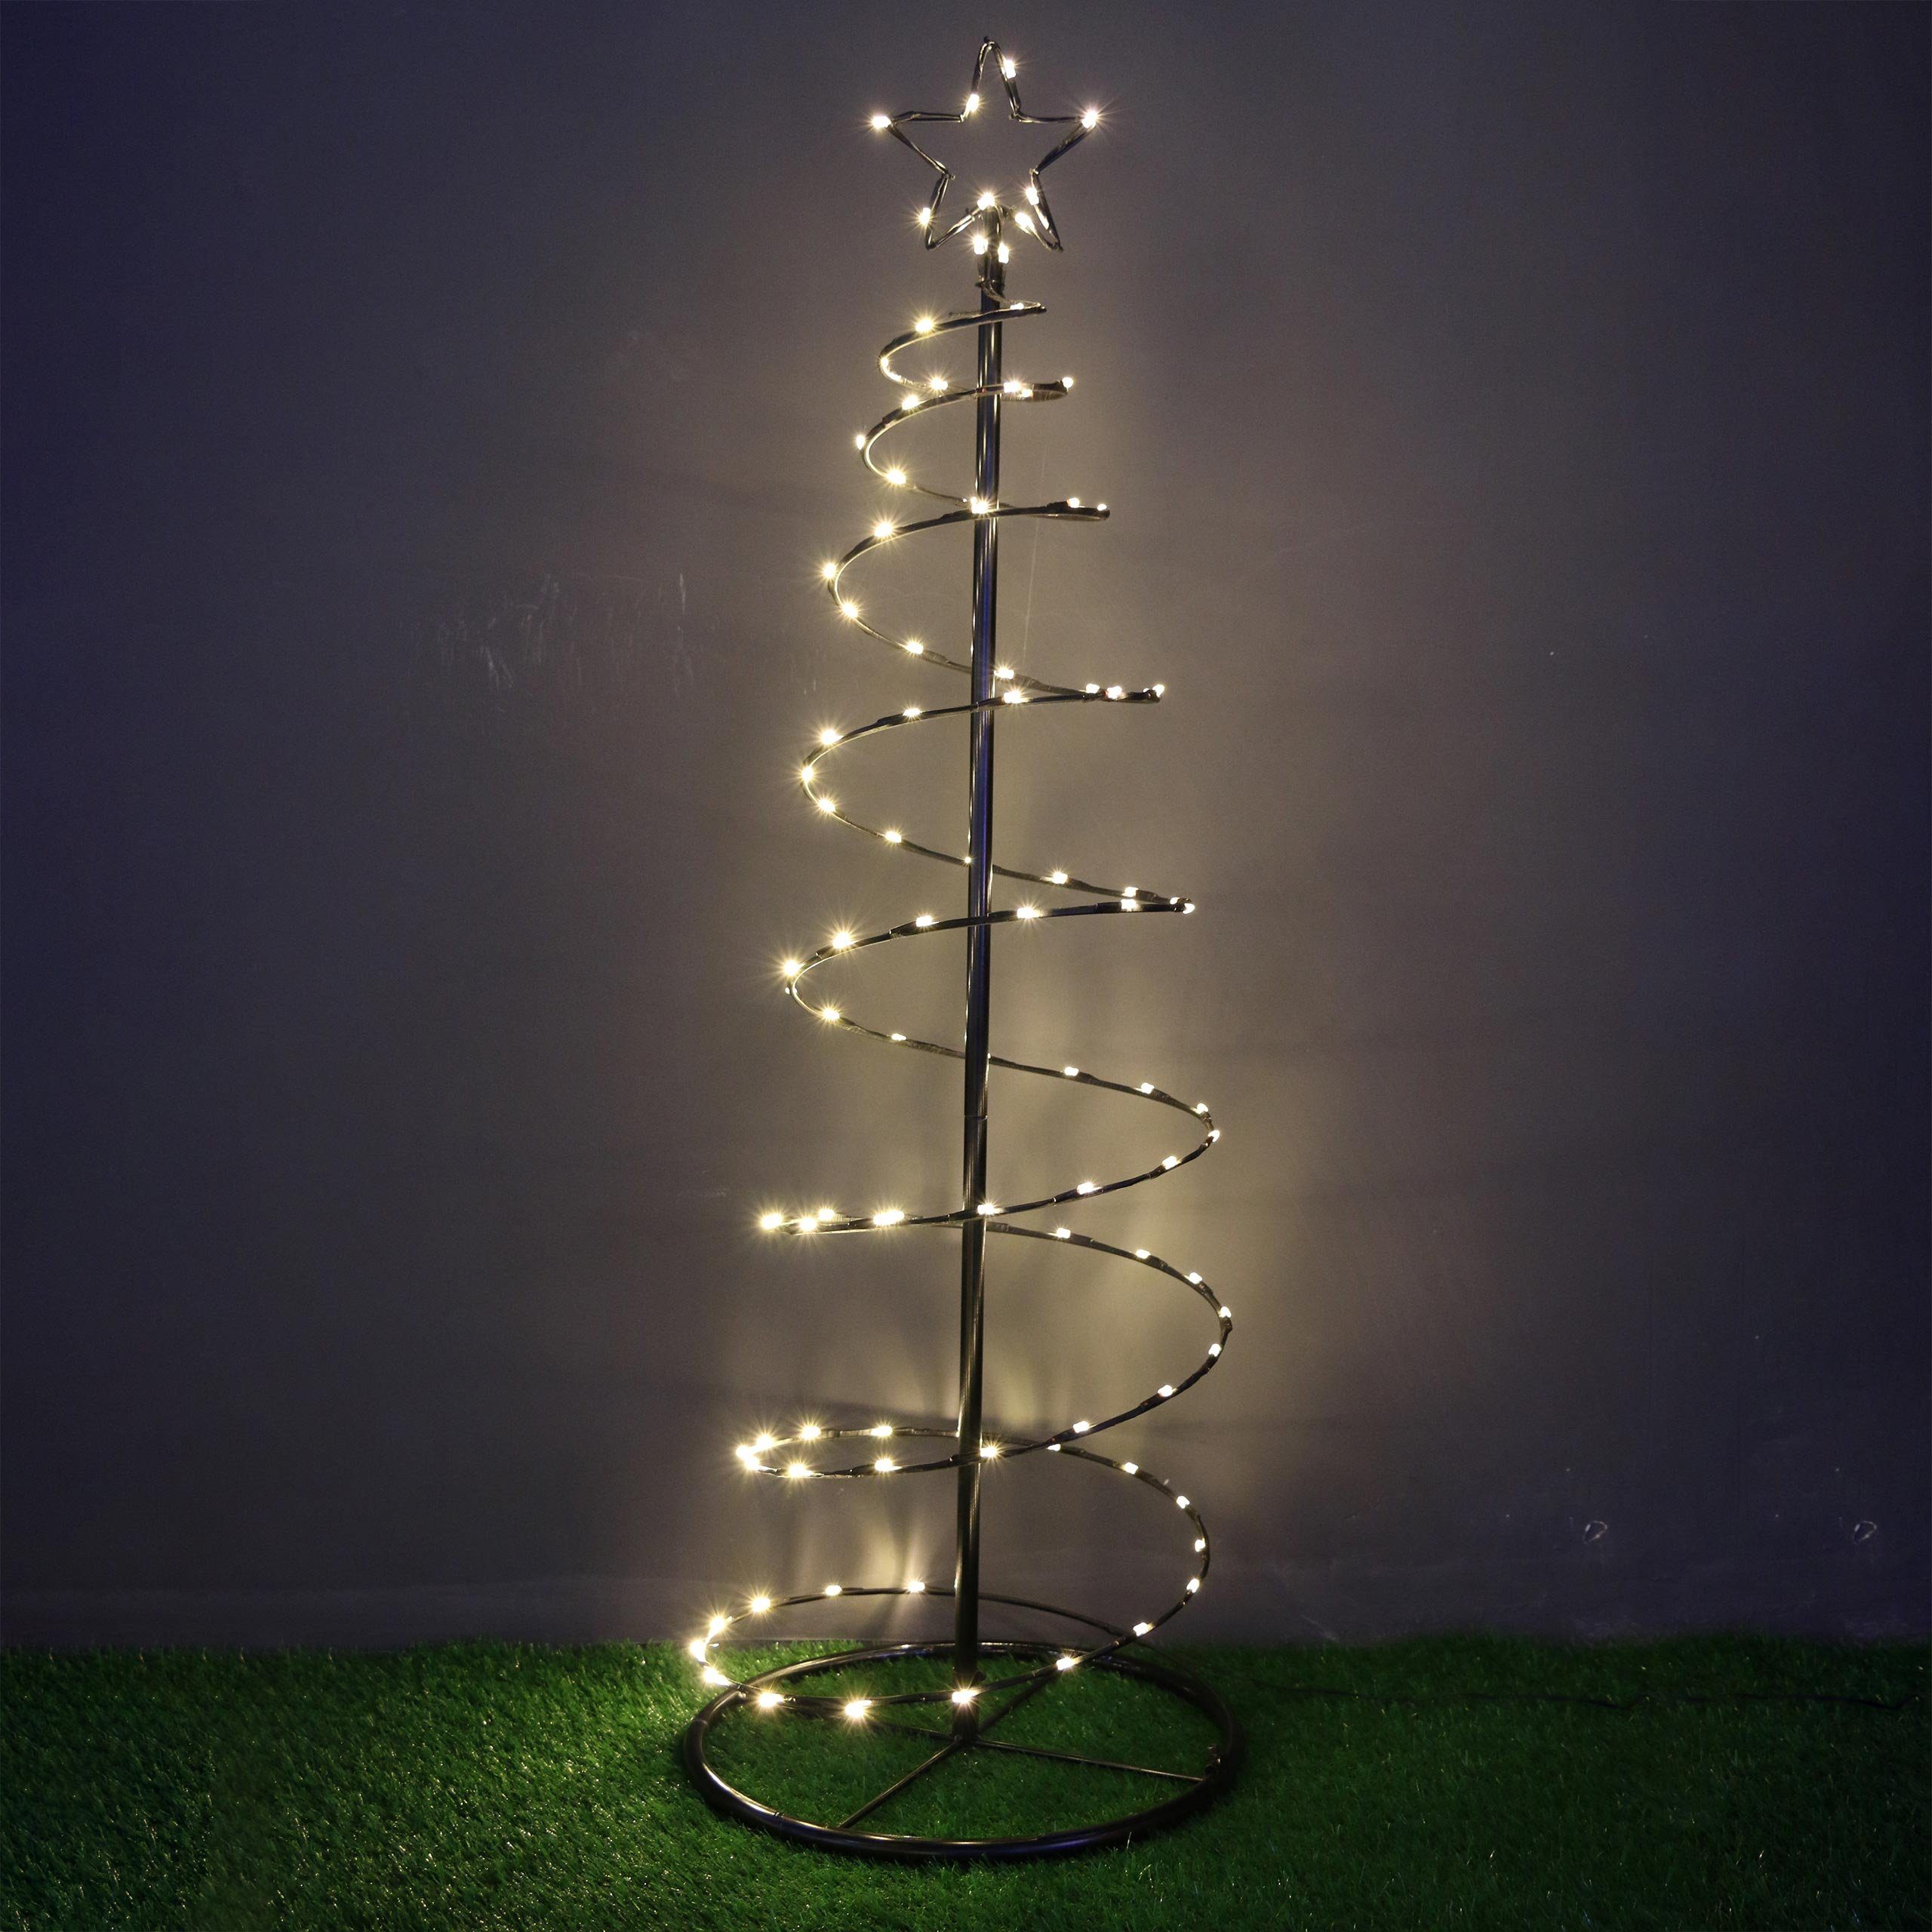 LED Weihnachtsbaum warmweiß Metallgestell bis 4m Höhe Lichterbaum